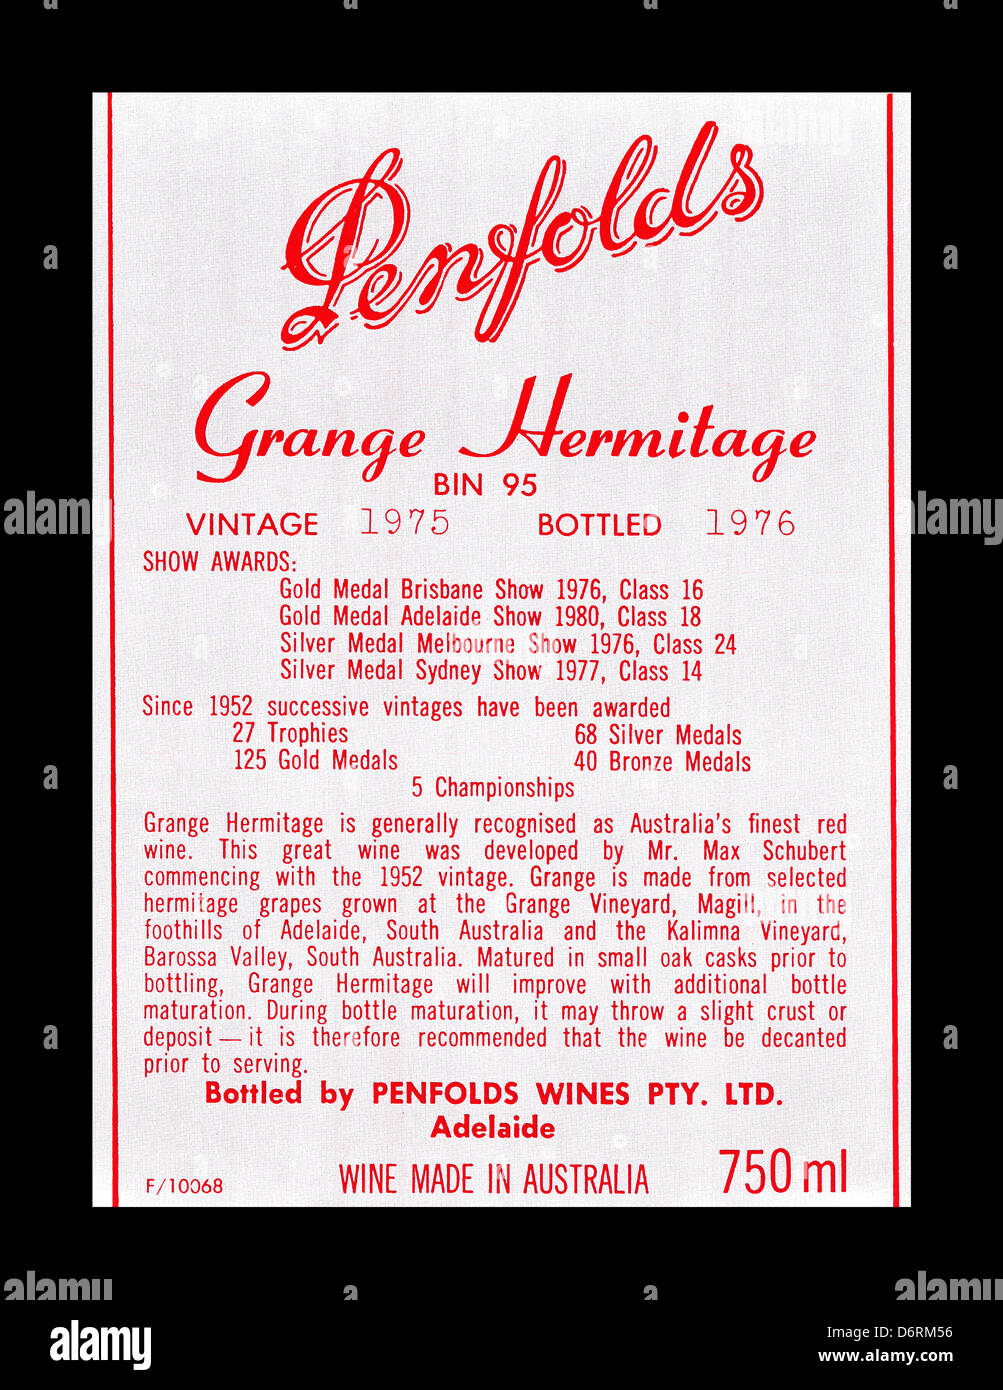 Penfolds Grange Weinflasche Etikett, australischer Wein, vorwiegend aus Shiraz und Cabernet Sauvignon Trauben hergestellt Stockfoto